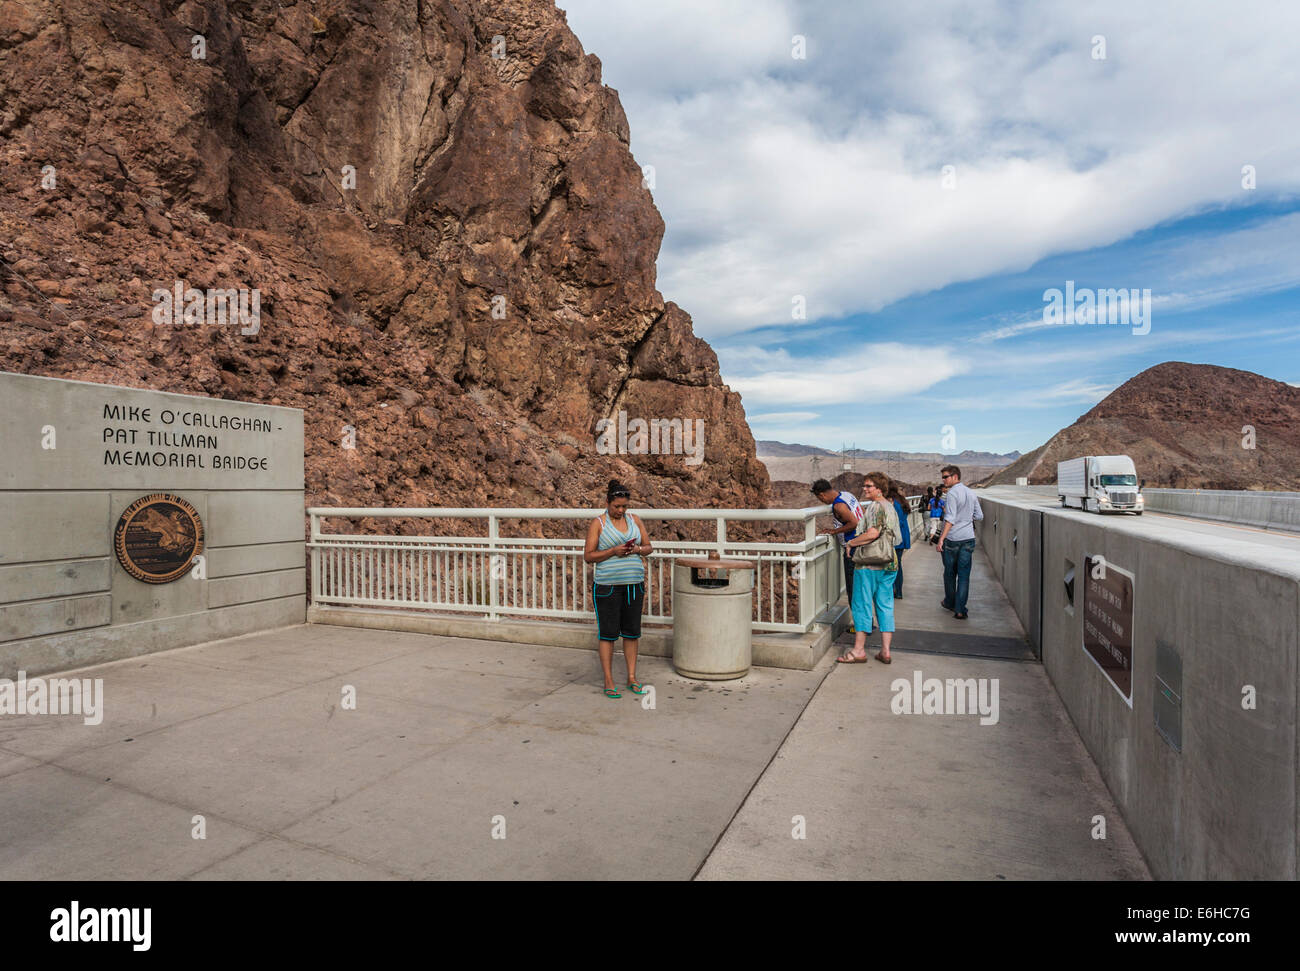 Tourists on the Mike O'Callaghan - Pat Tillman Memorial Bridge over the Colorado River near Boulder City, Nevada Stock Photo